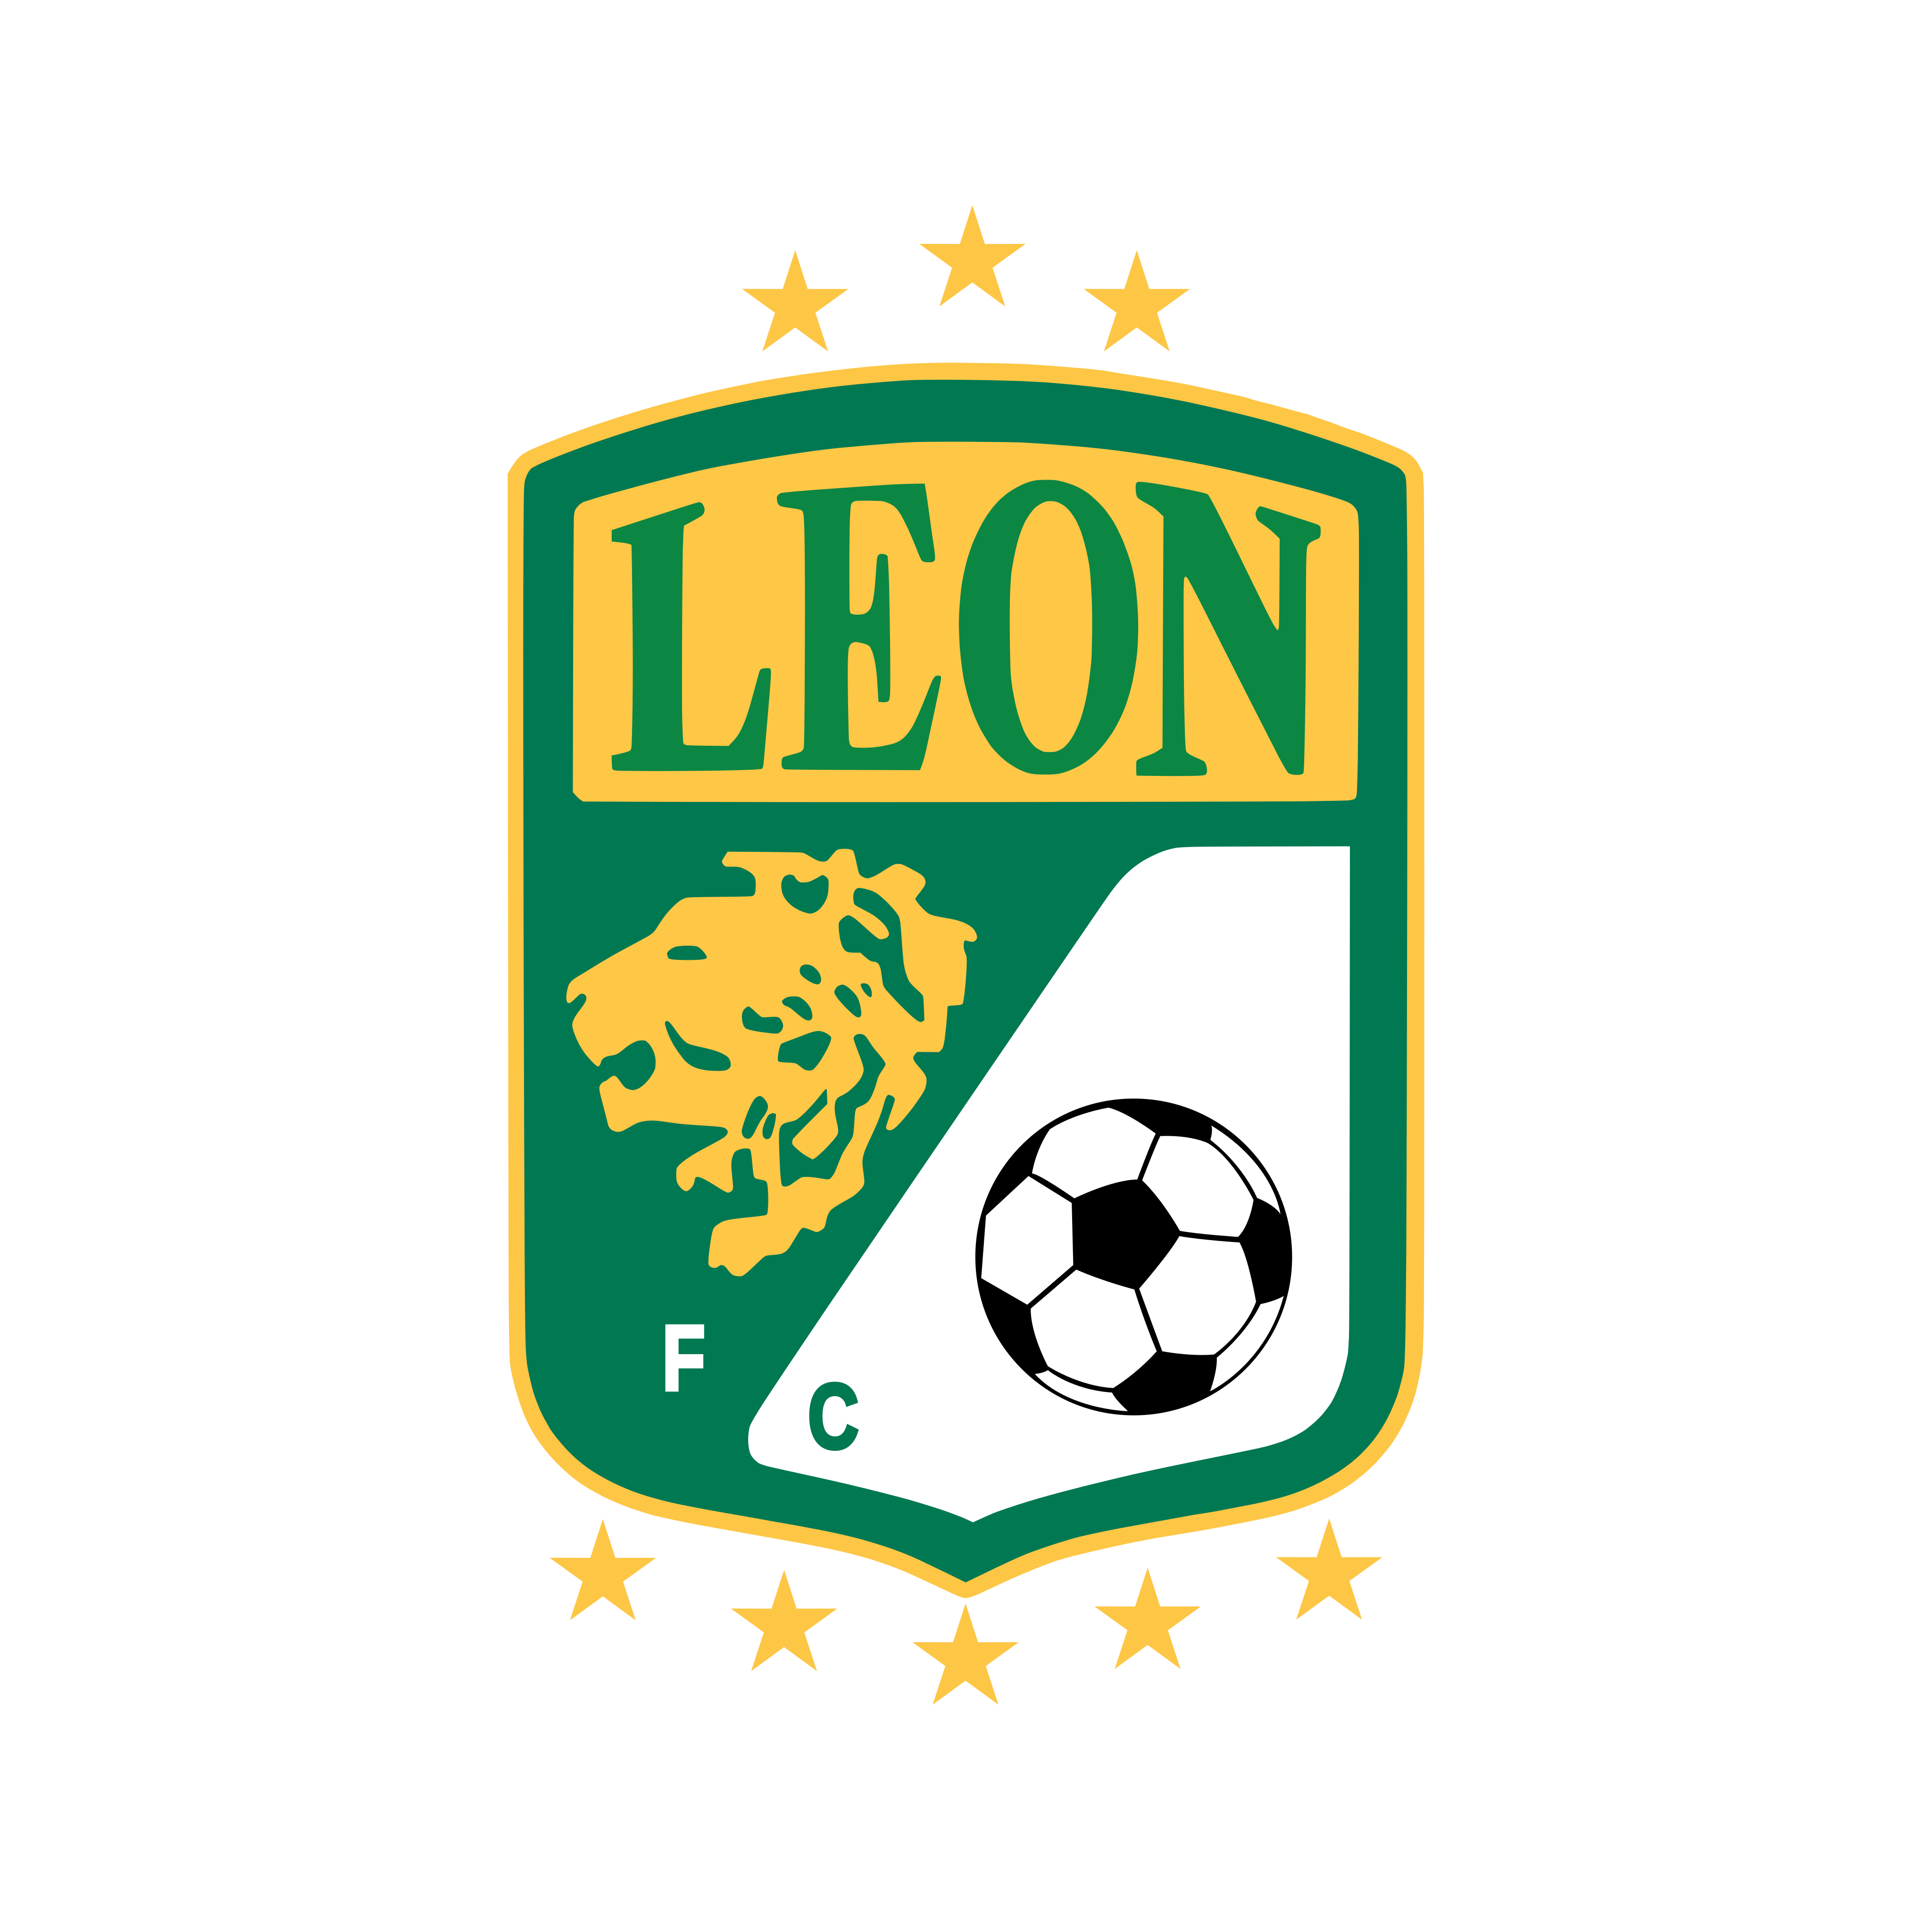 club leon logo 0 - Club León Logo